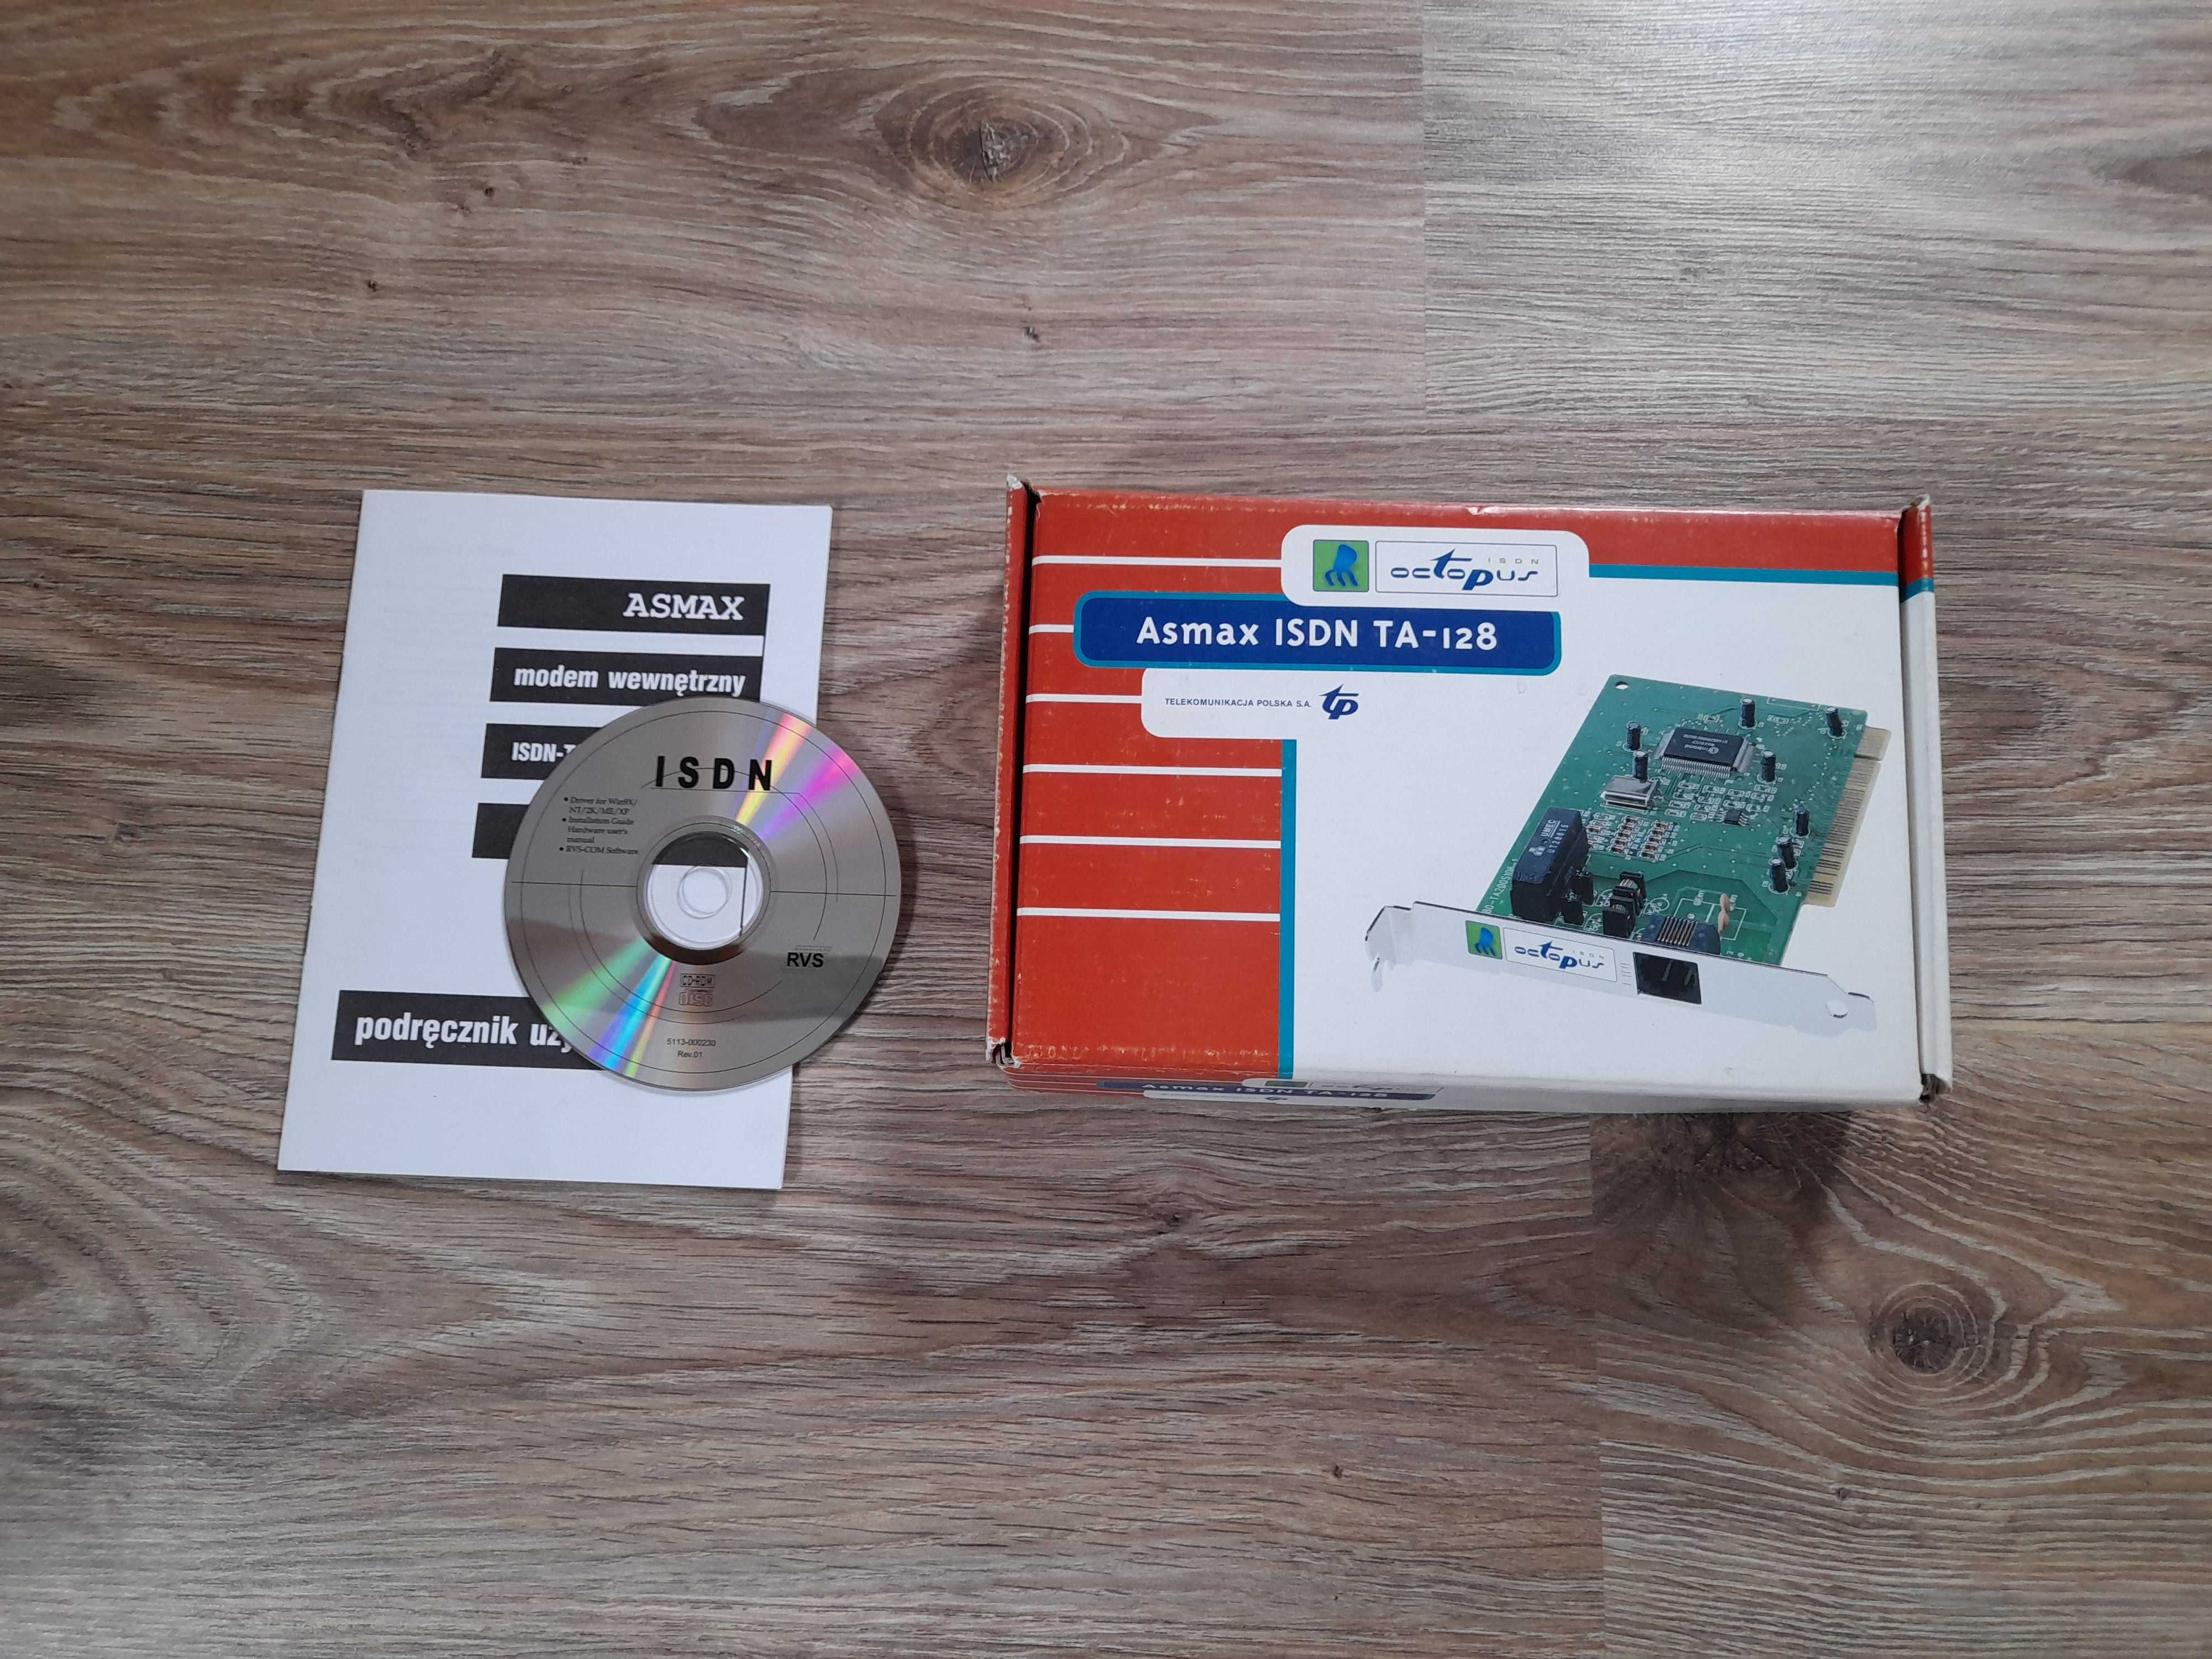 ISDN 80-TA200S106-1 (z pudełkiem: podręcznik użytkownika, płyta)